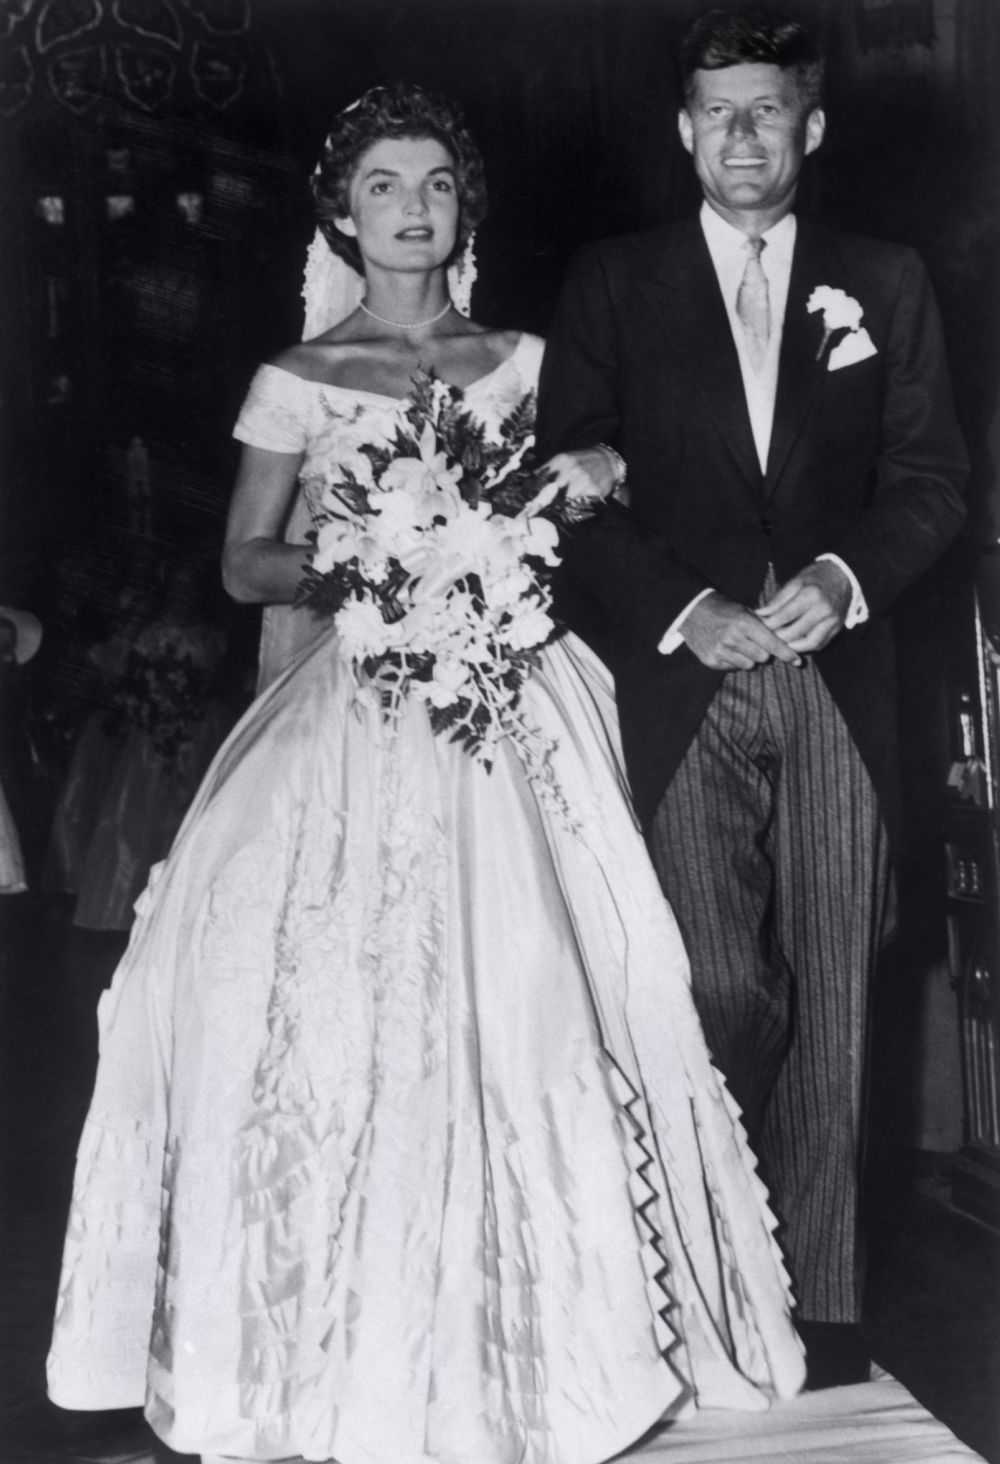 12 сентября 1953 года Жаклин Ли Бувье и Джон Кеннеди поженились. Свадебная церемония прошла в церкви Св. Марии в Ньюпорту в штате Род-Айленд.